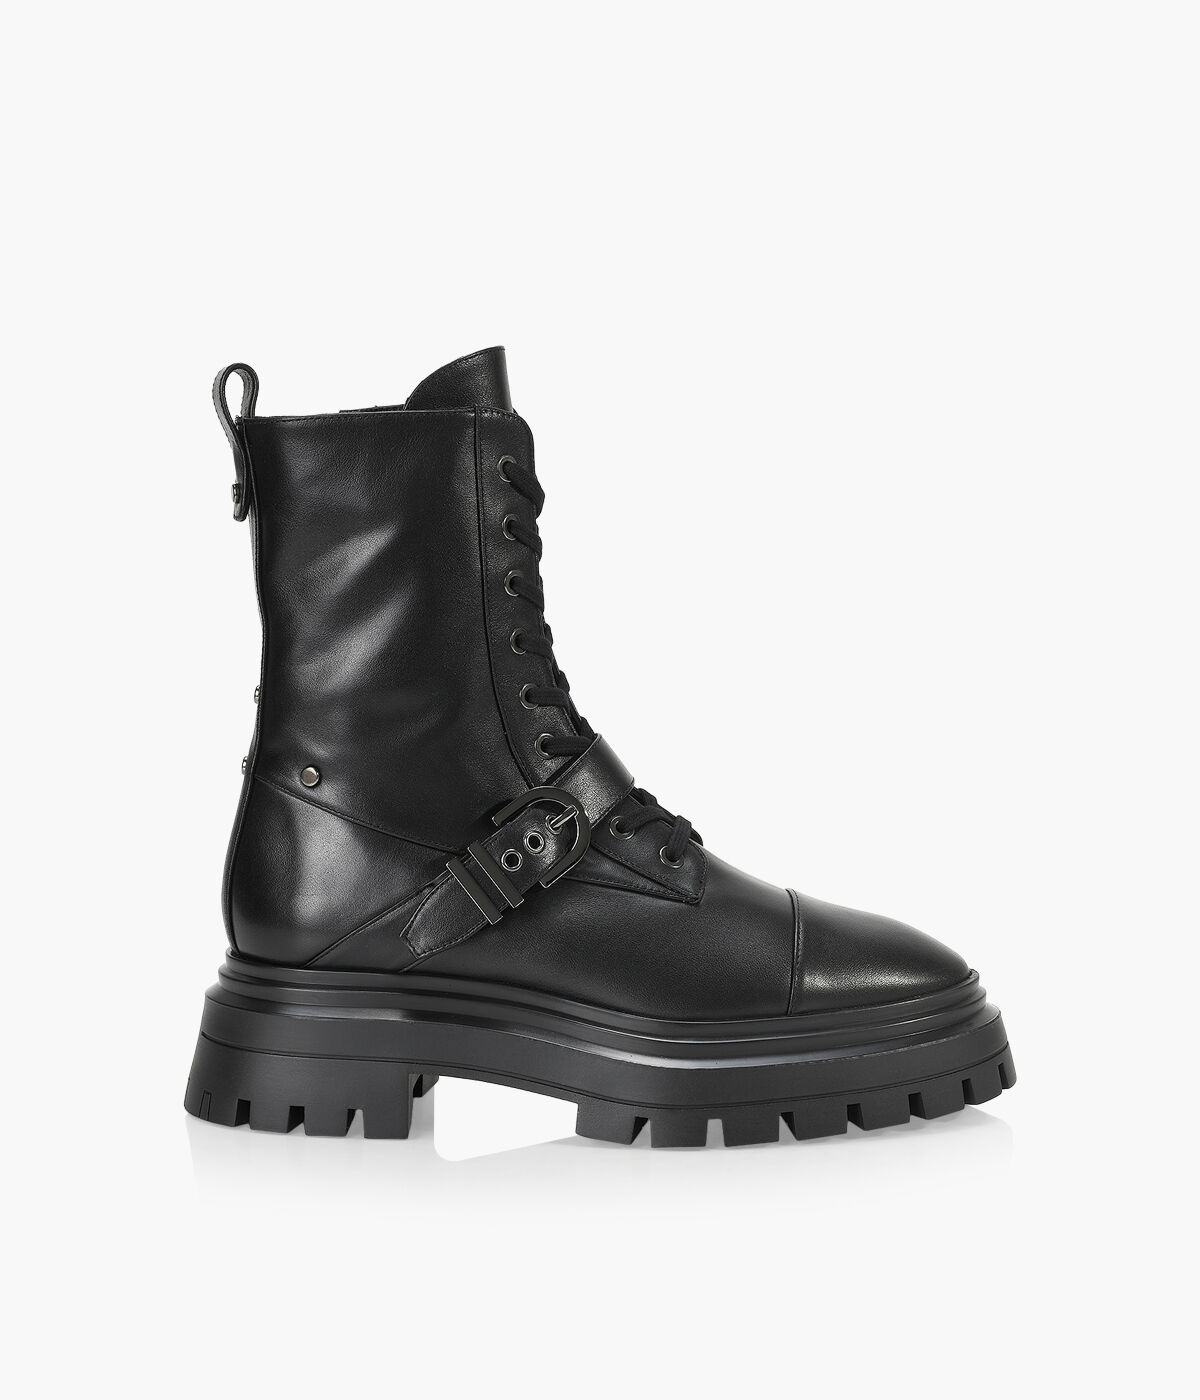 STUART WEITZMAN MAVERICK BEDFORD BOOTIE - Black Leather | Browns Shoes